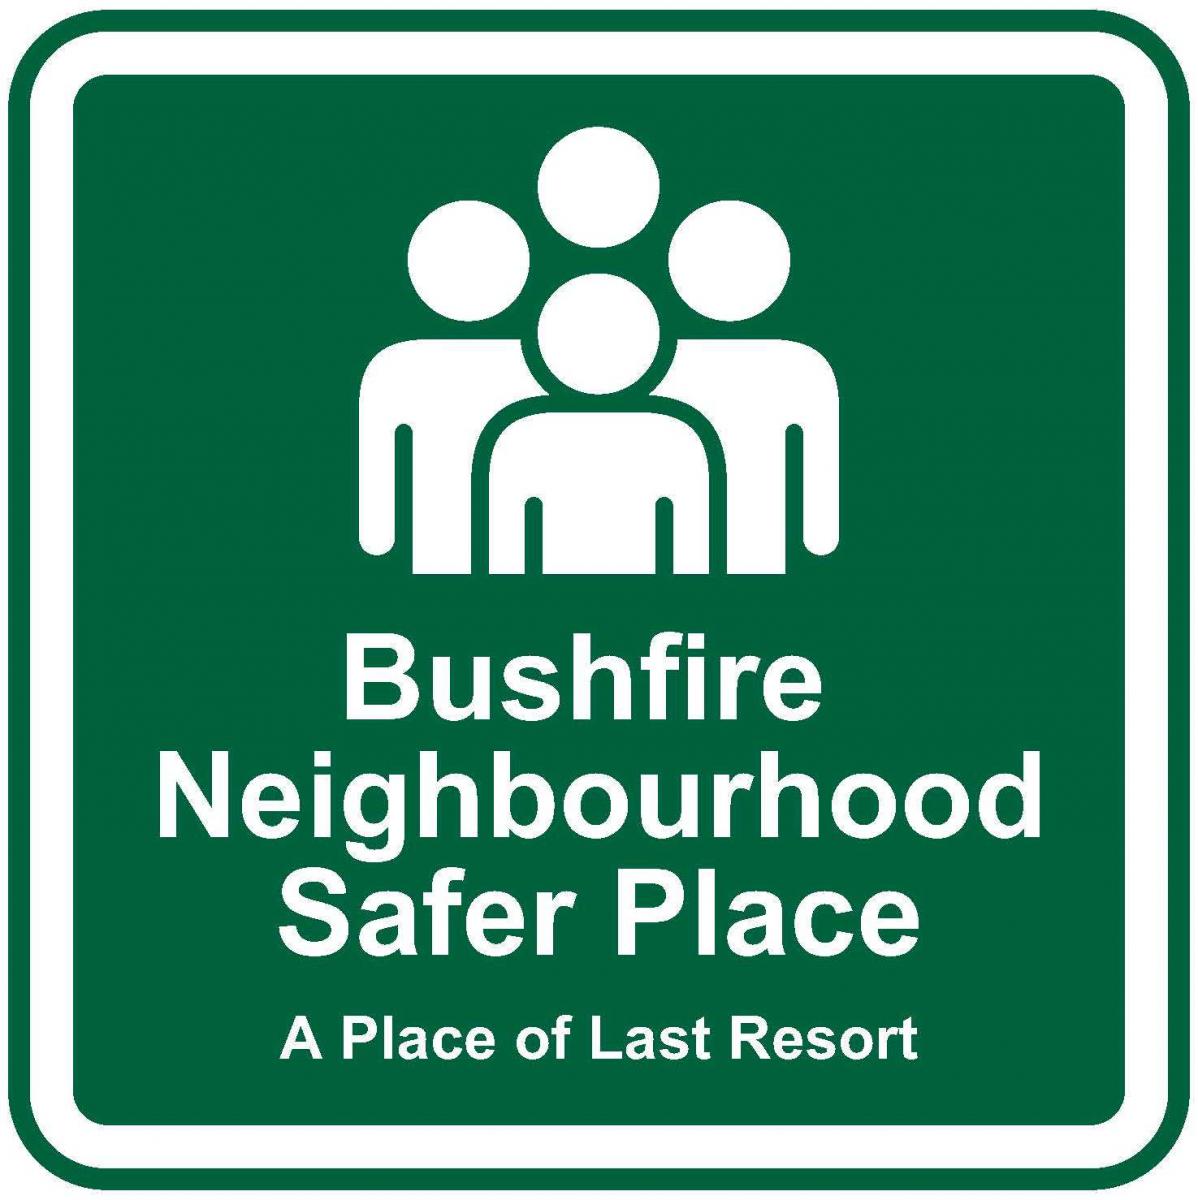 Bushfire Neighbourhood Safer Place